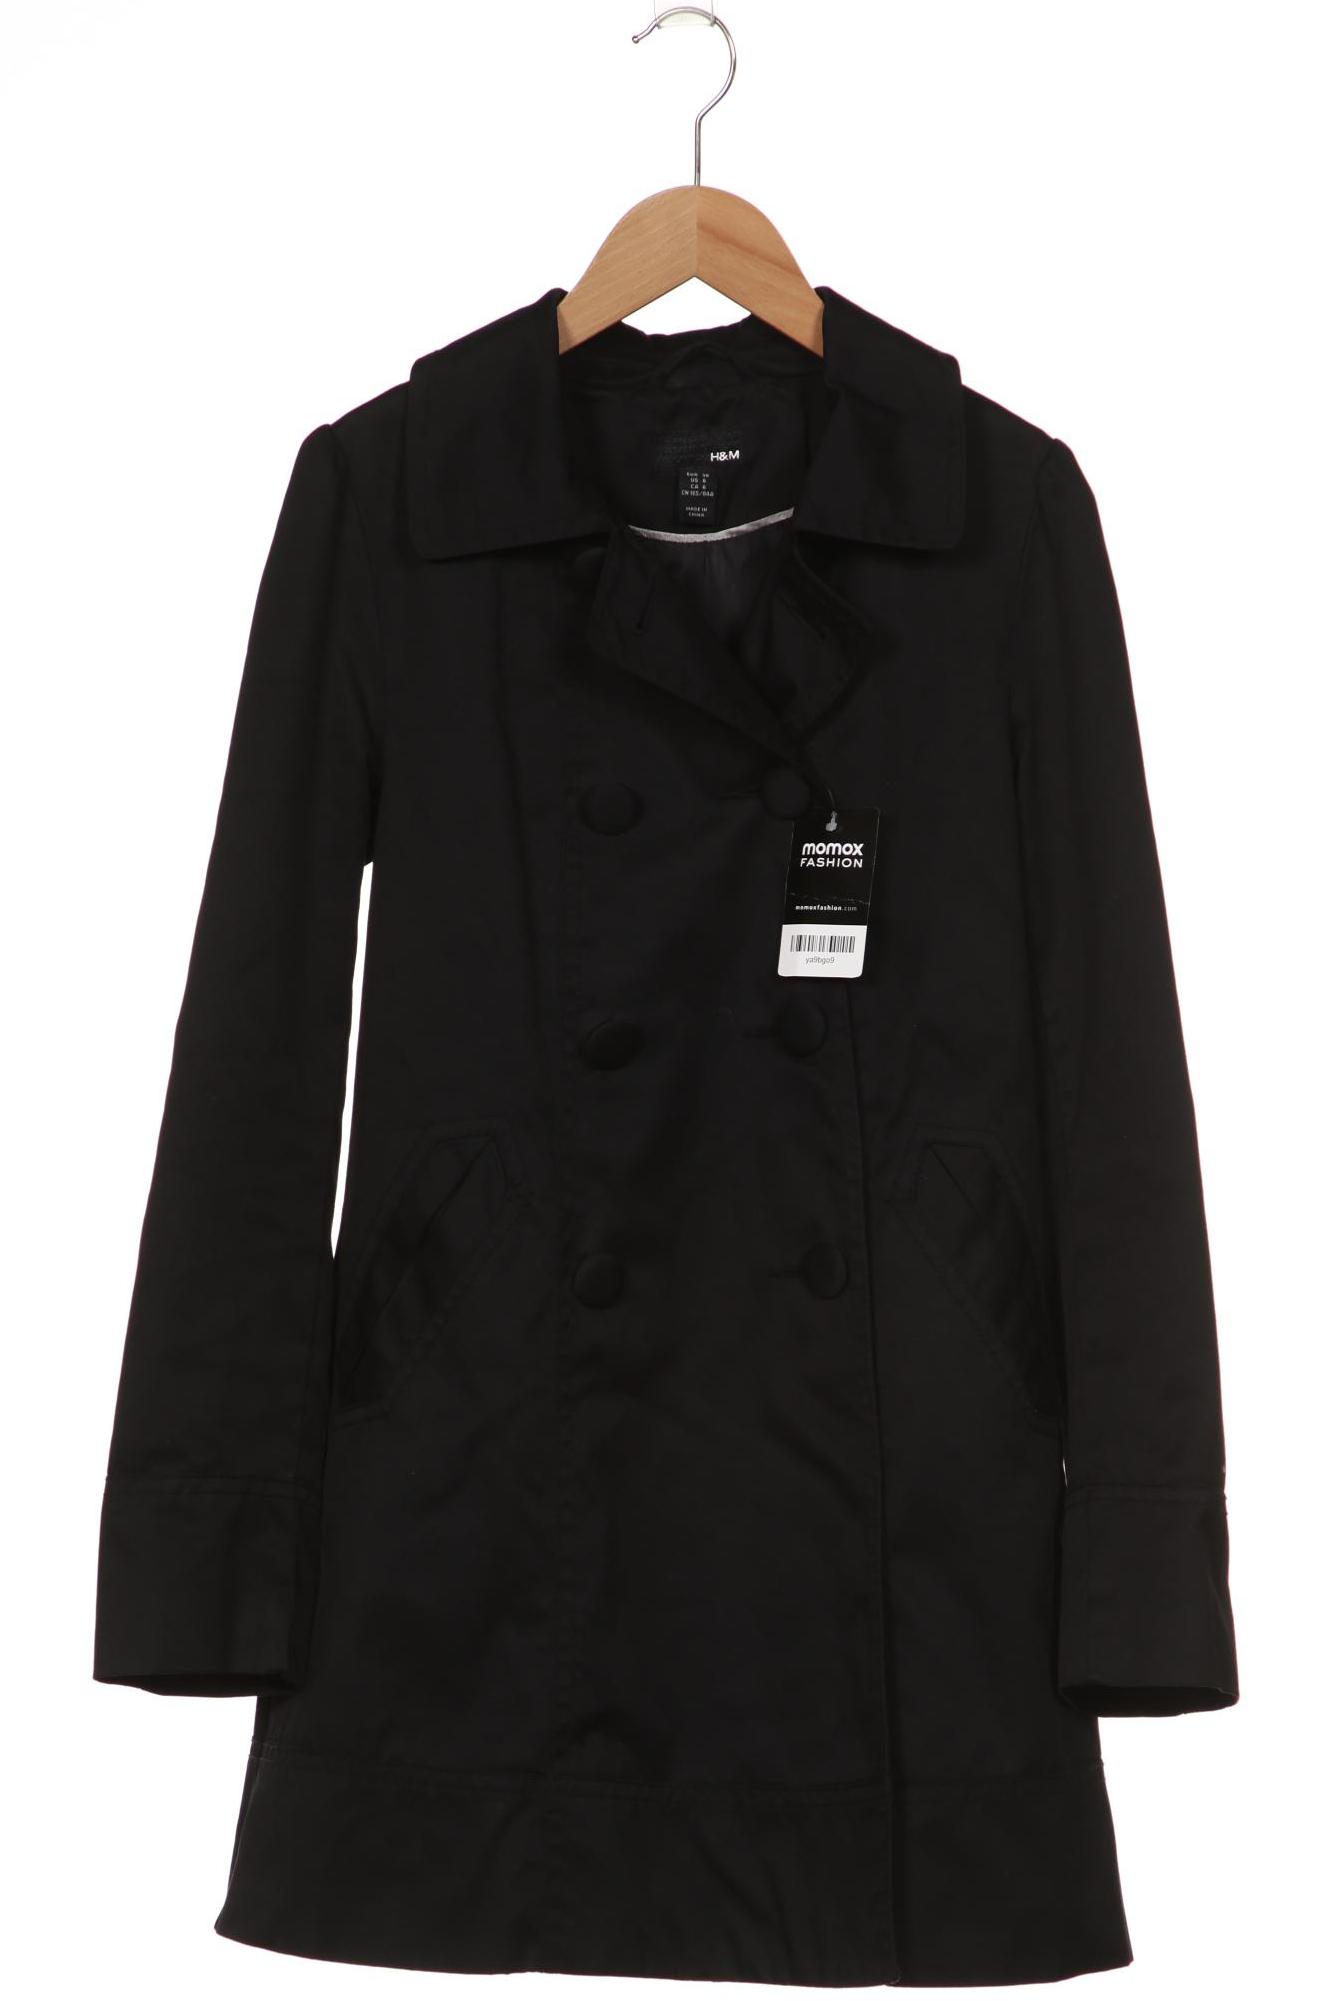 H&M Damen Mantel, schwarz von H&M